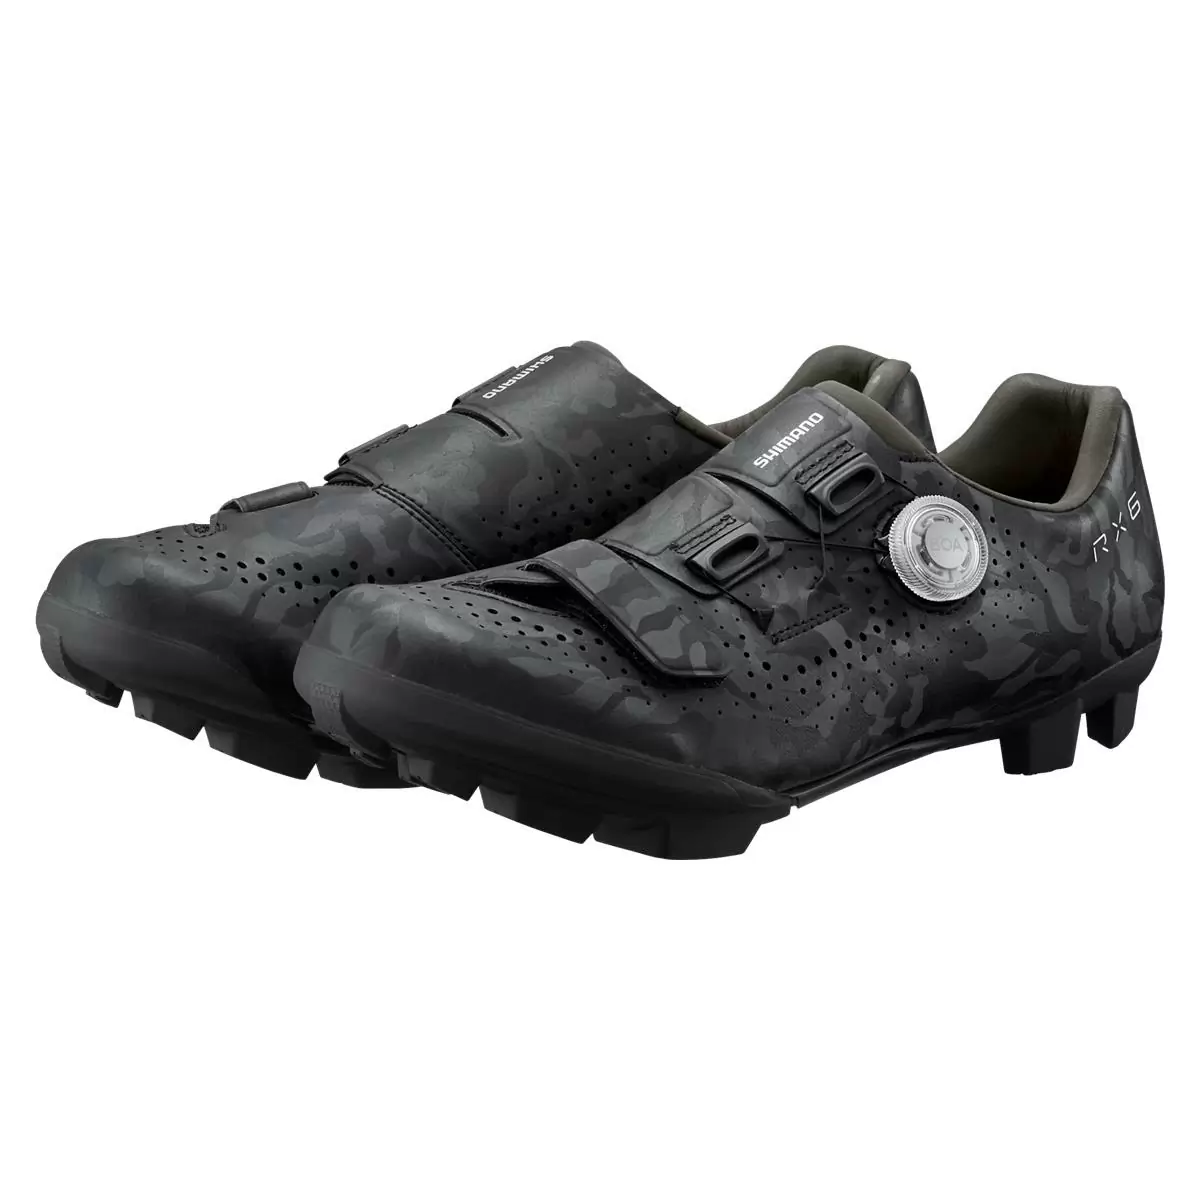 MTB / Gravel Shoes SH-RX600 RX6 Black Size 41 #3